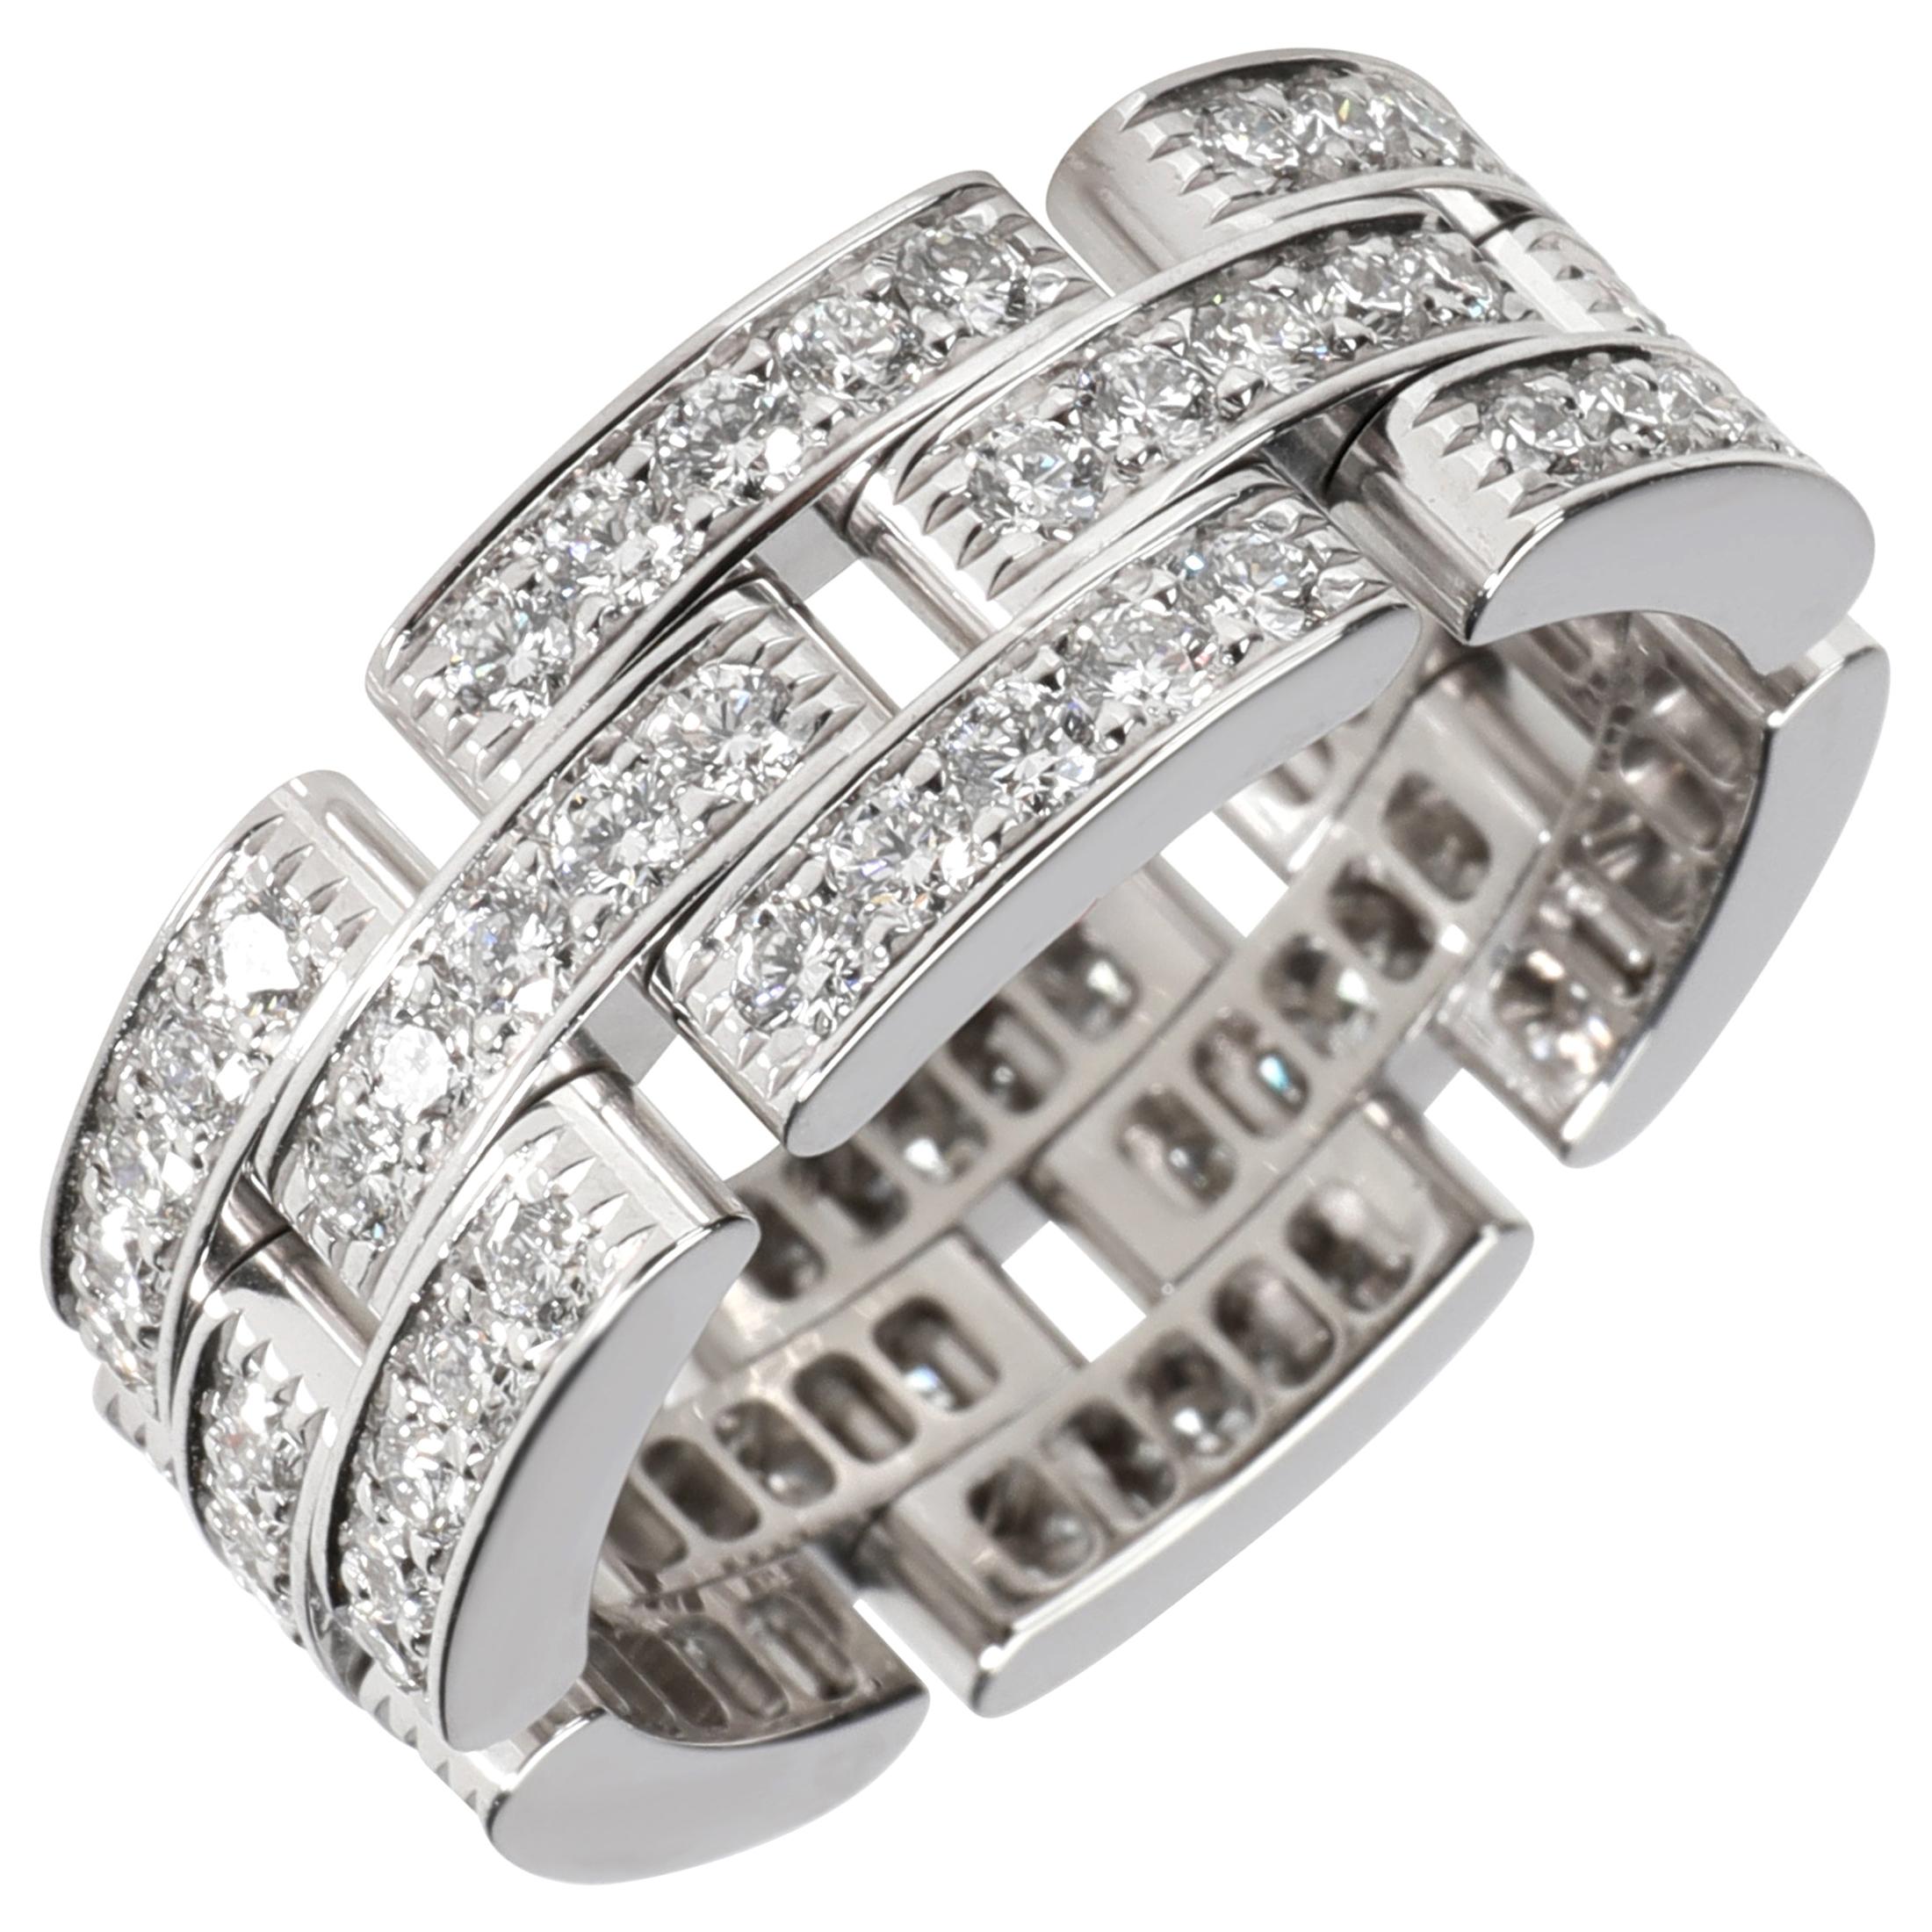 Cartier Maillon Panthere Diamond Ring in 18 Karat White Gold 1.80 Carat